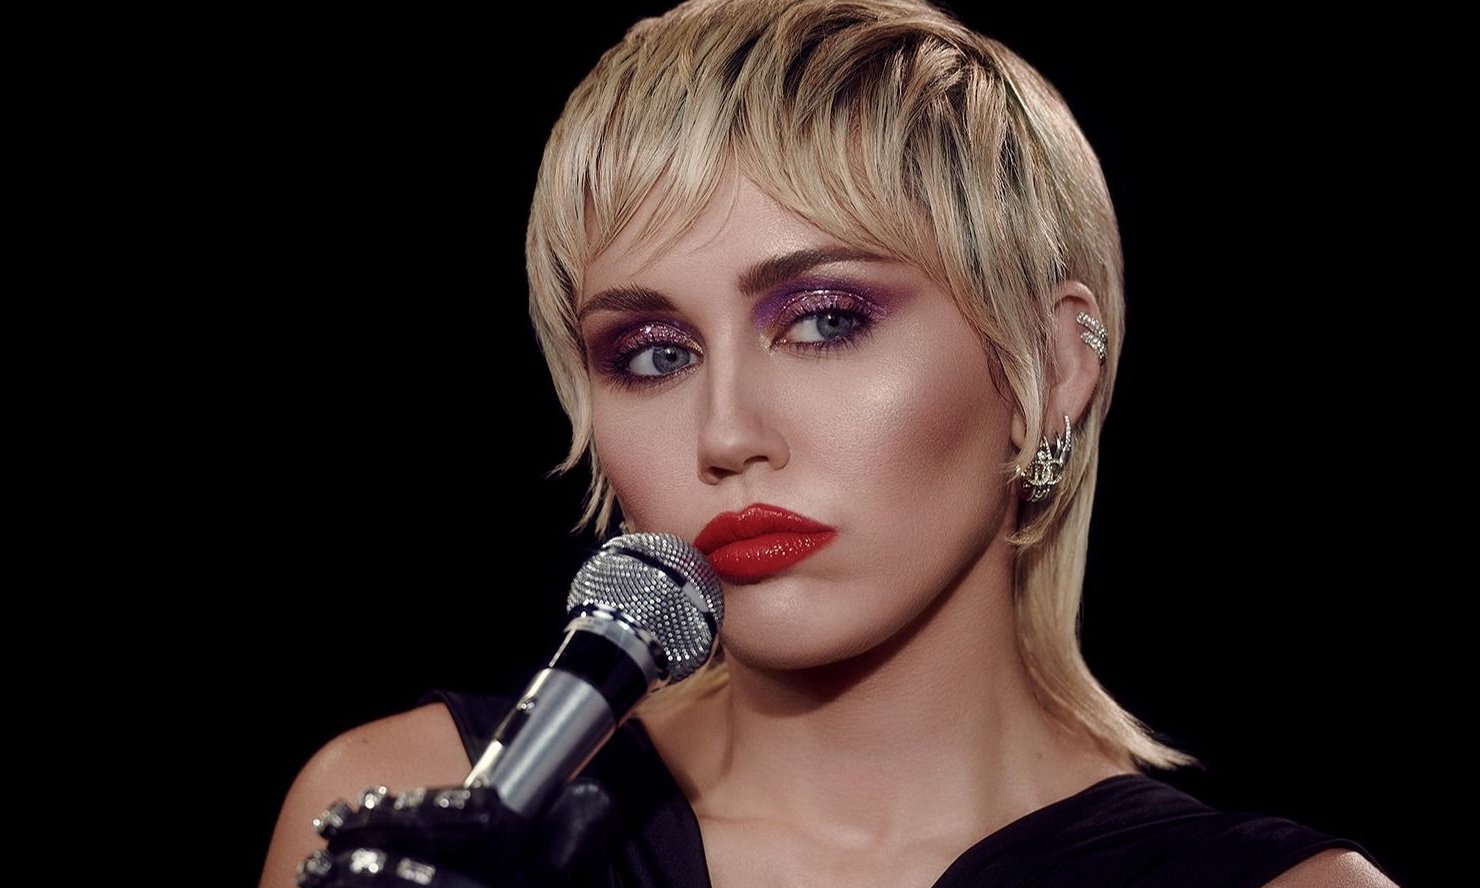 Miley Cyrus reversionó la mítica canción de Queen: "We Will Rock You"